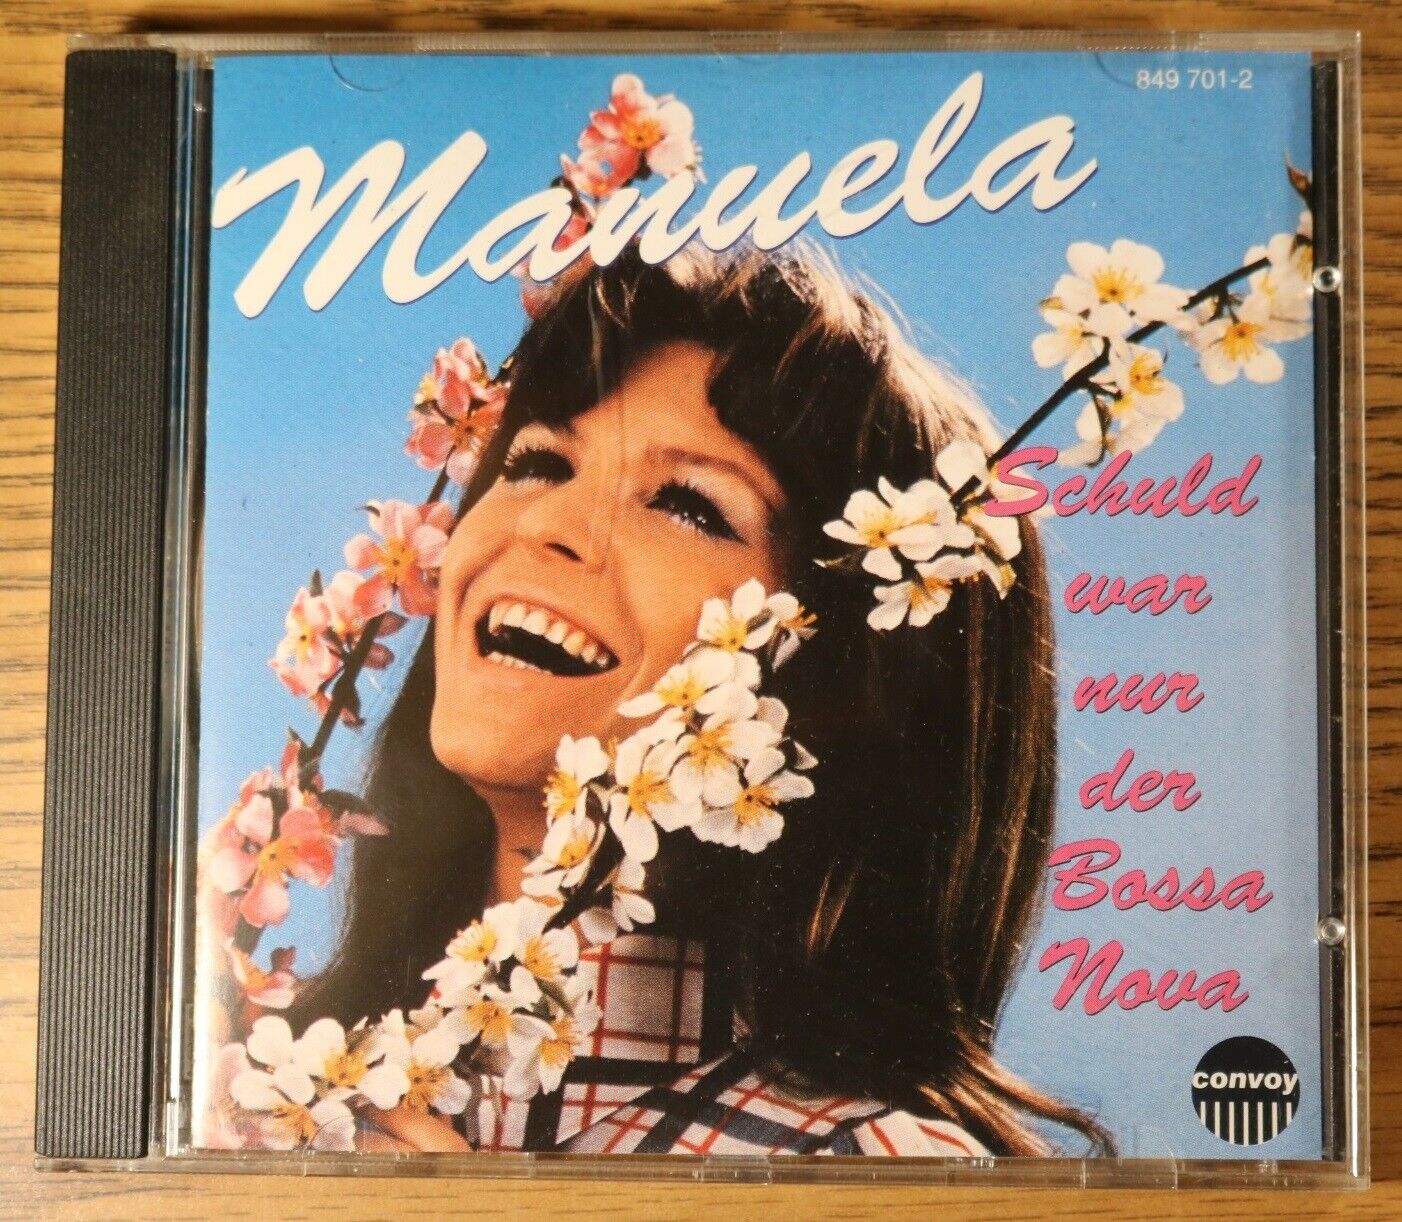 Used CD - Manuela Schuld War Nur Der Bossa Nova 1991 German Deutsche Schlager